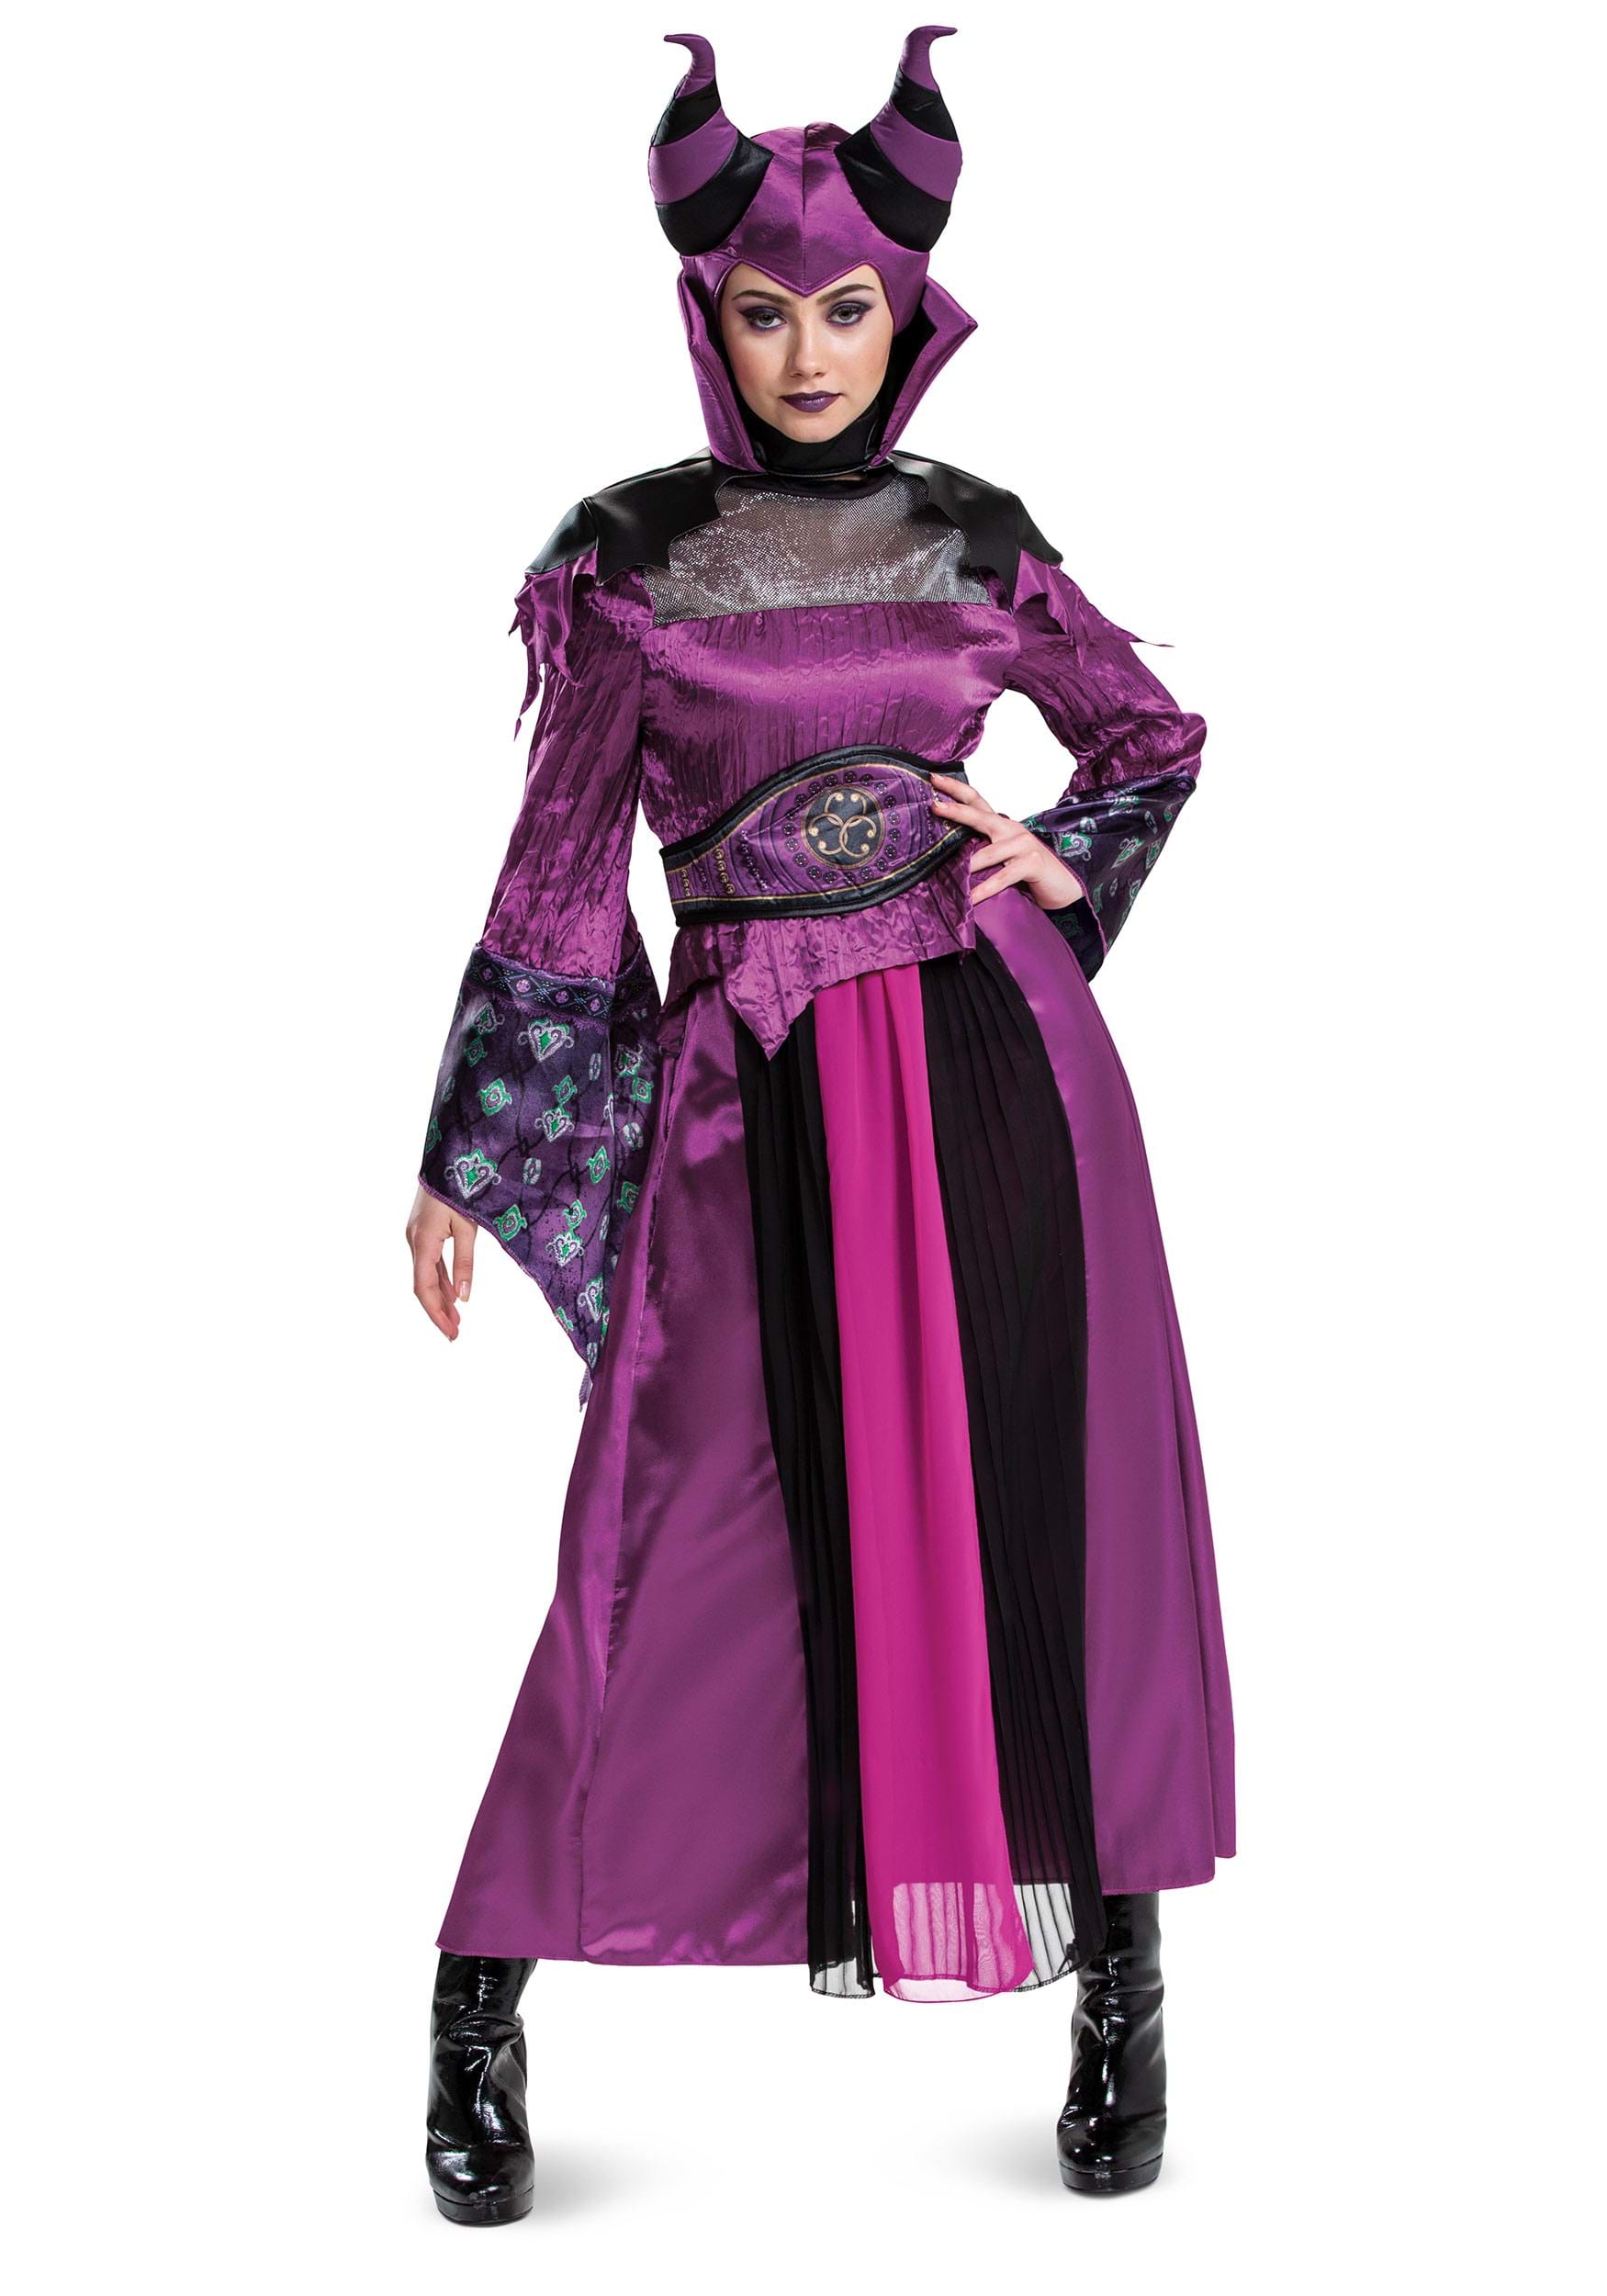 Image of Women's Descendants Maleficent Costume ID DI121119-M